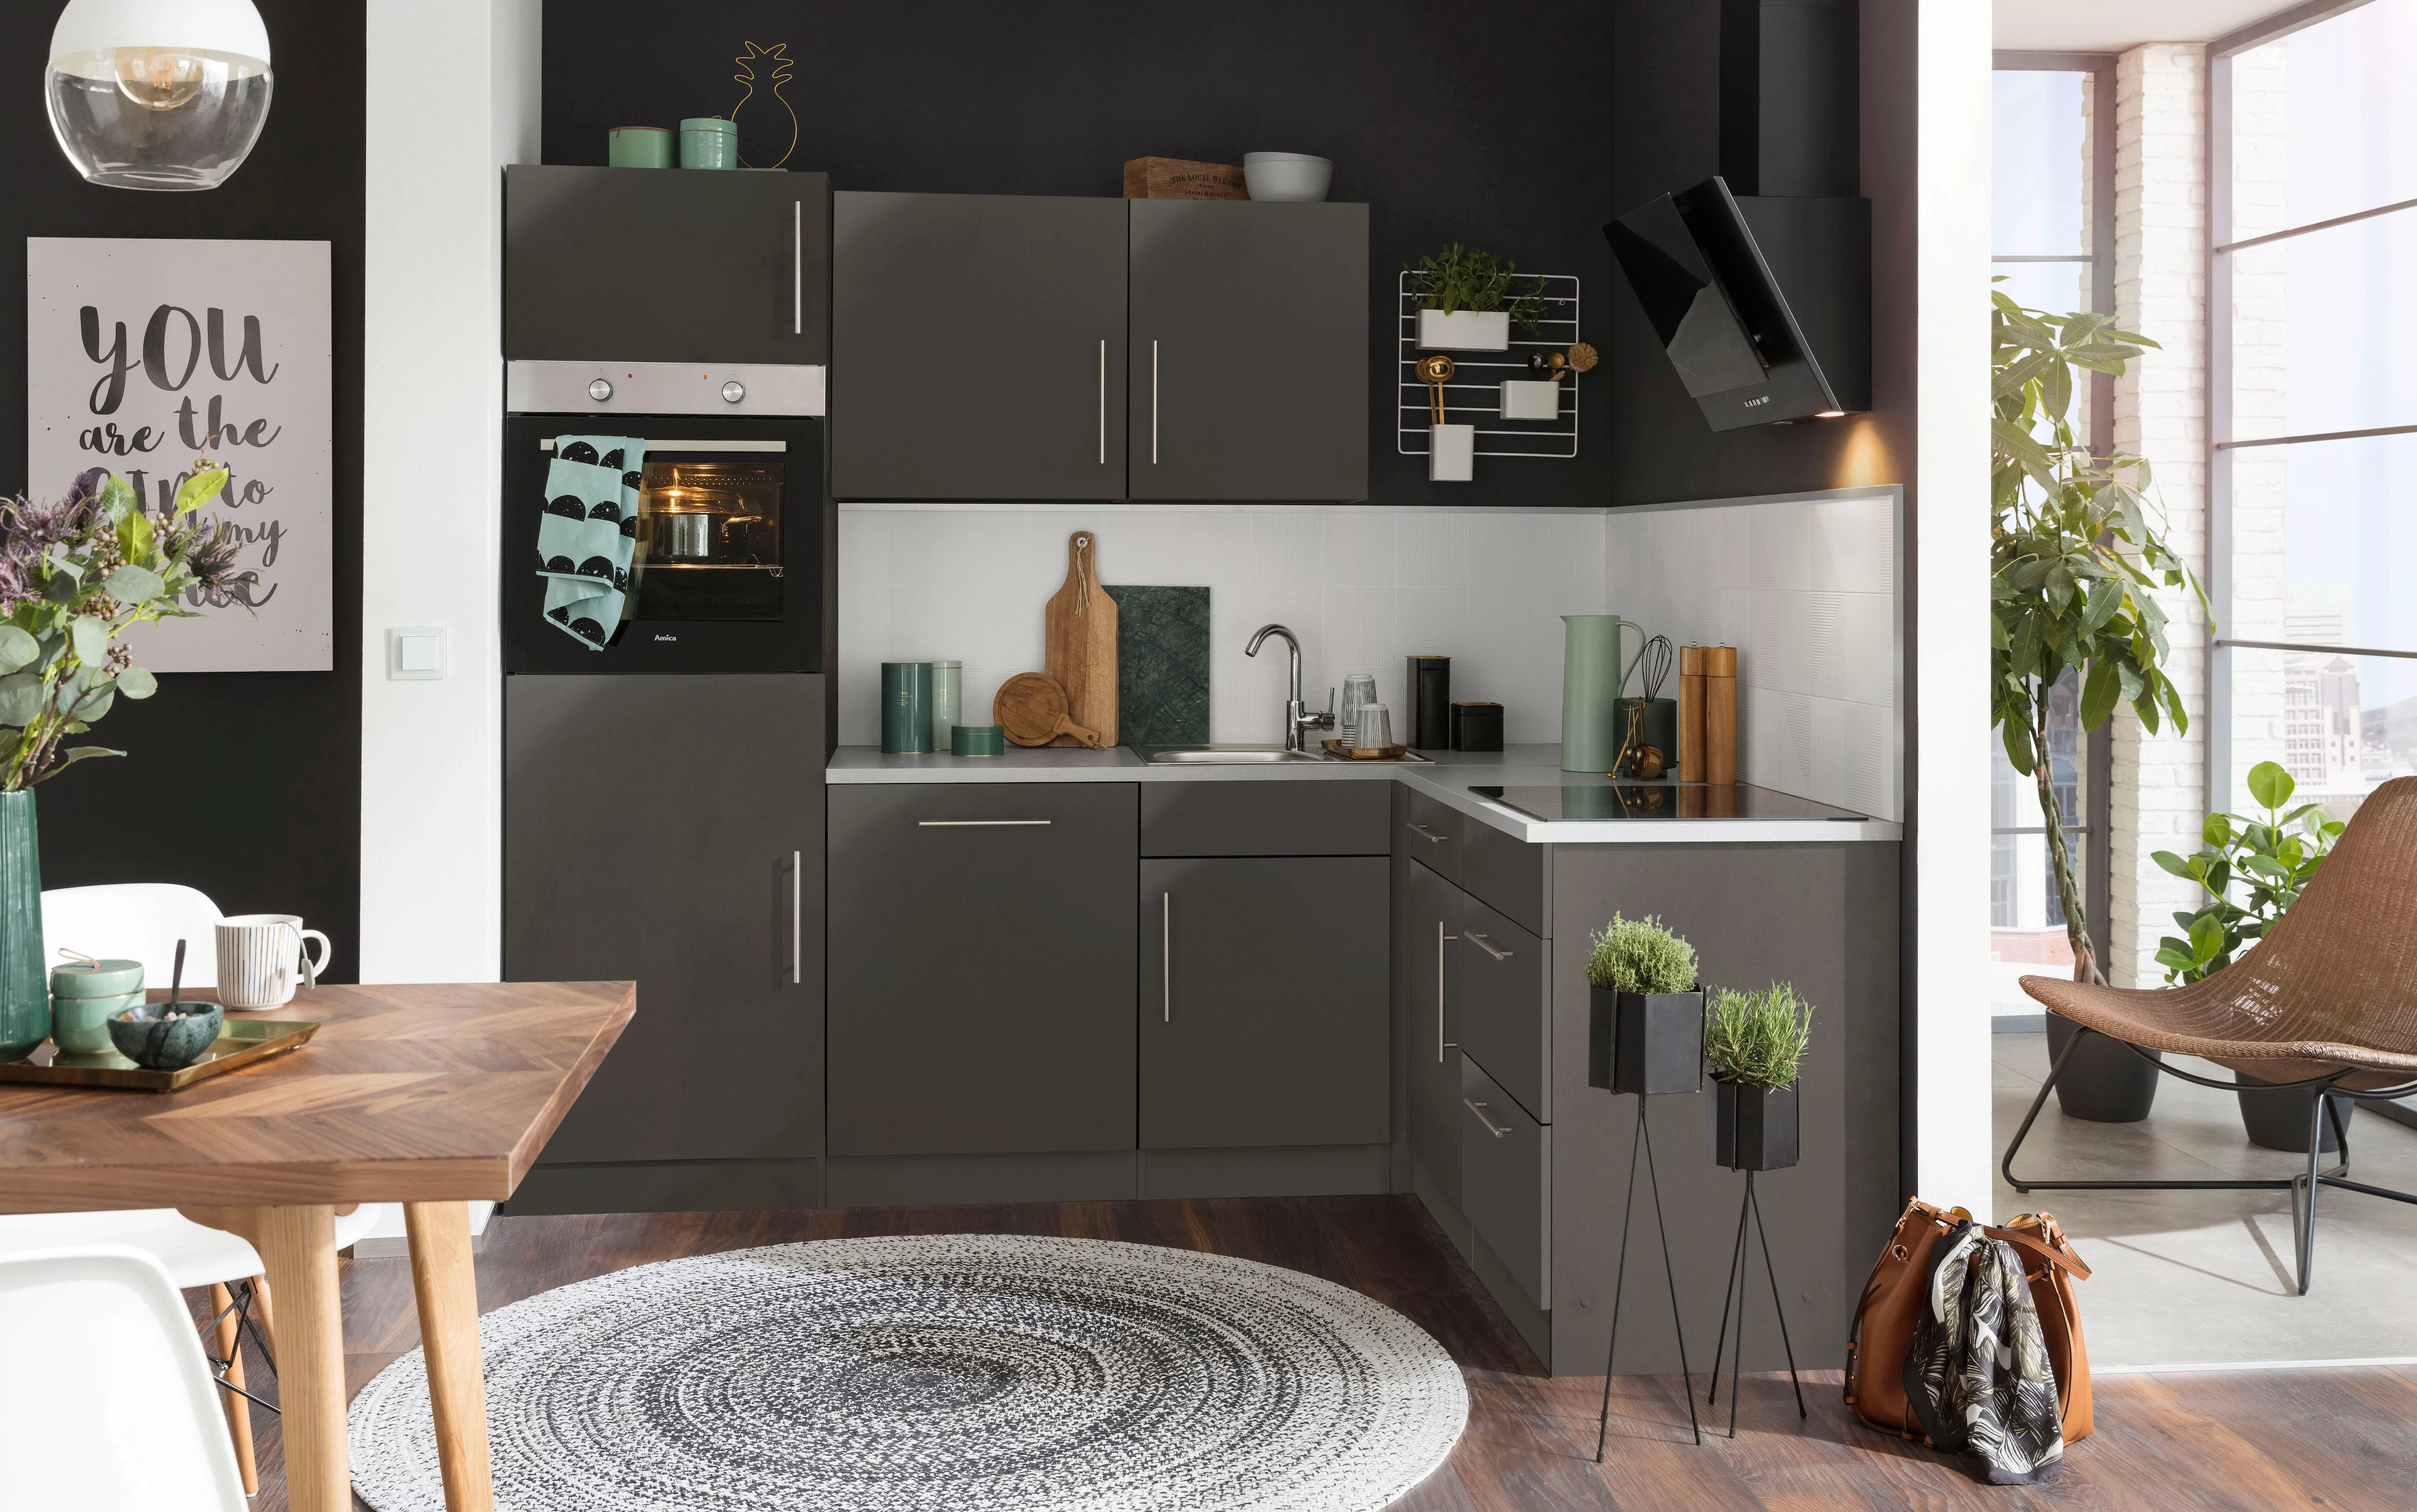 wiho Küchen Winkelküche "Cali", mit E-Geräten, Stellbreite 230 x 170 cm günstig online kaufen